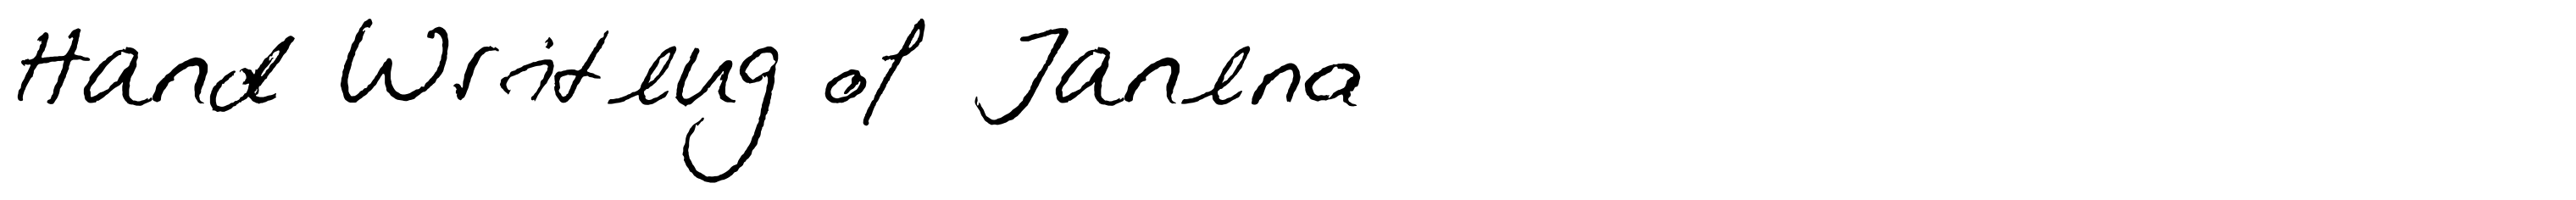 Hand Writing of Janina